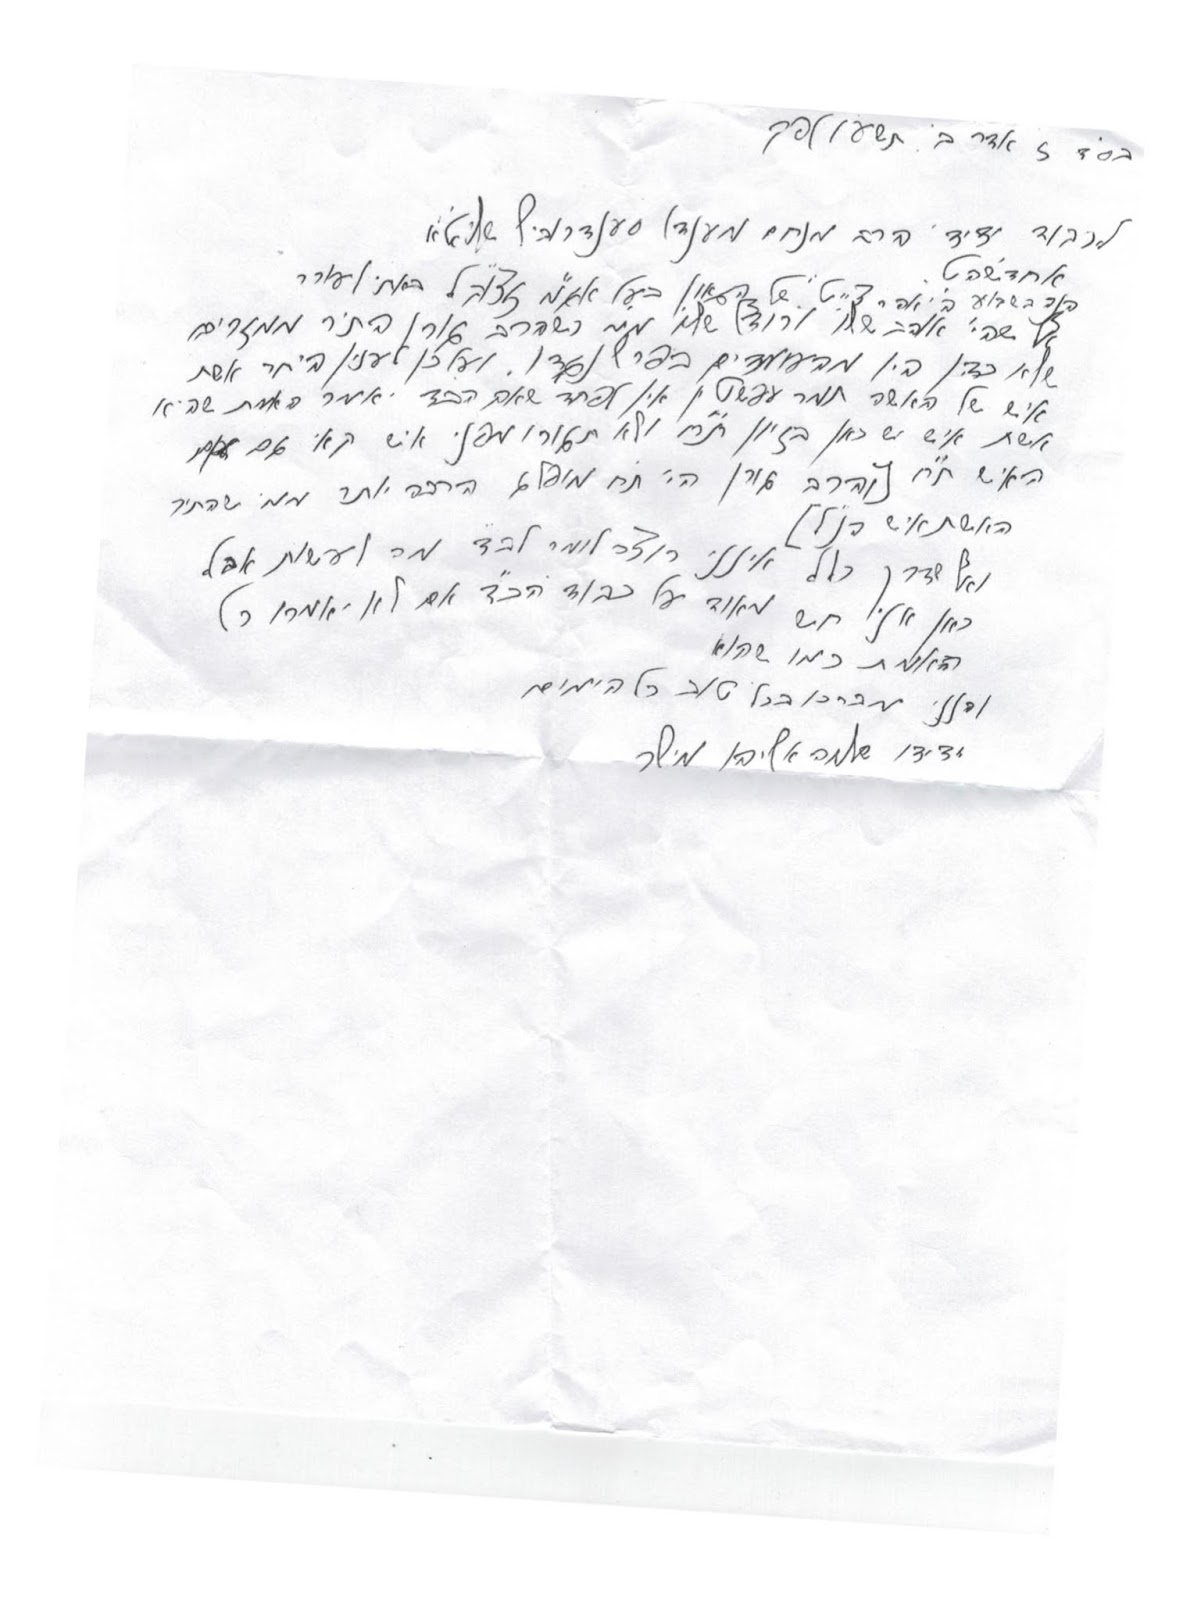 Rav Shlomo MIller New letter.jpg